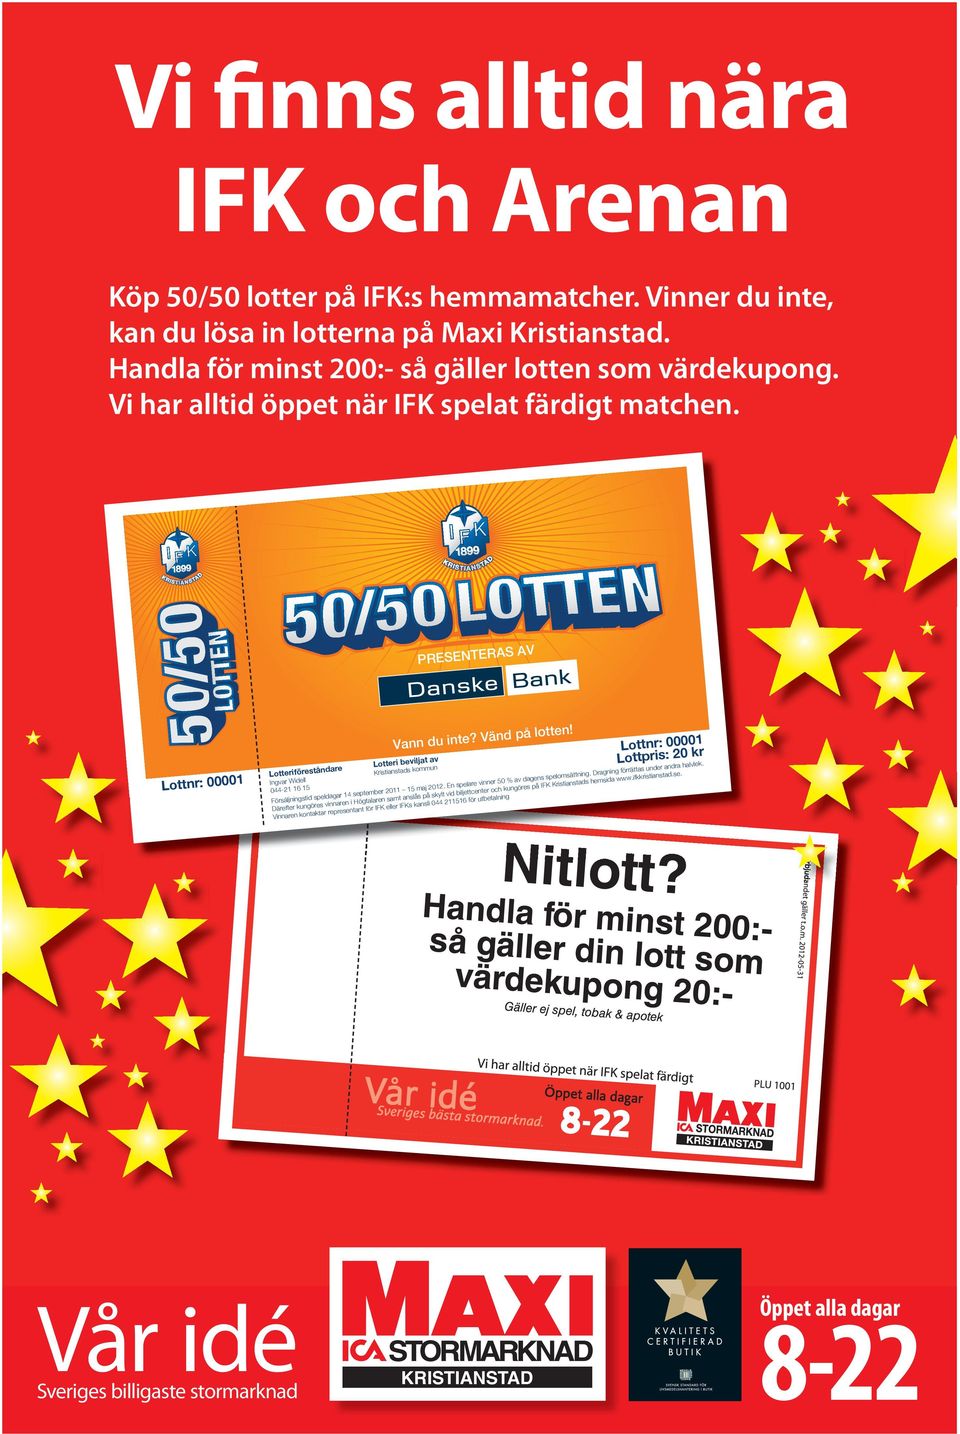 Lotteri beviljat av Kristianstads kommun Lottnr: 00001 Ingvar Widell 044-21 16 15 Försäljningstid speldagar 14 september 2011 15 maj 2012. En spelare vinner 50 % av dagens spelomsättning.